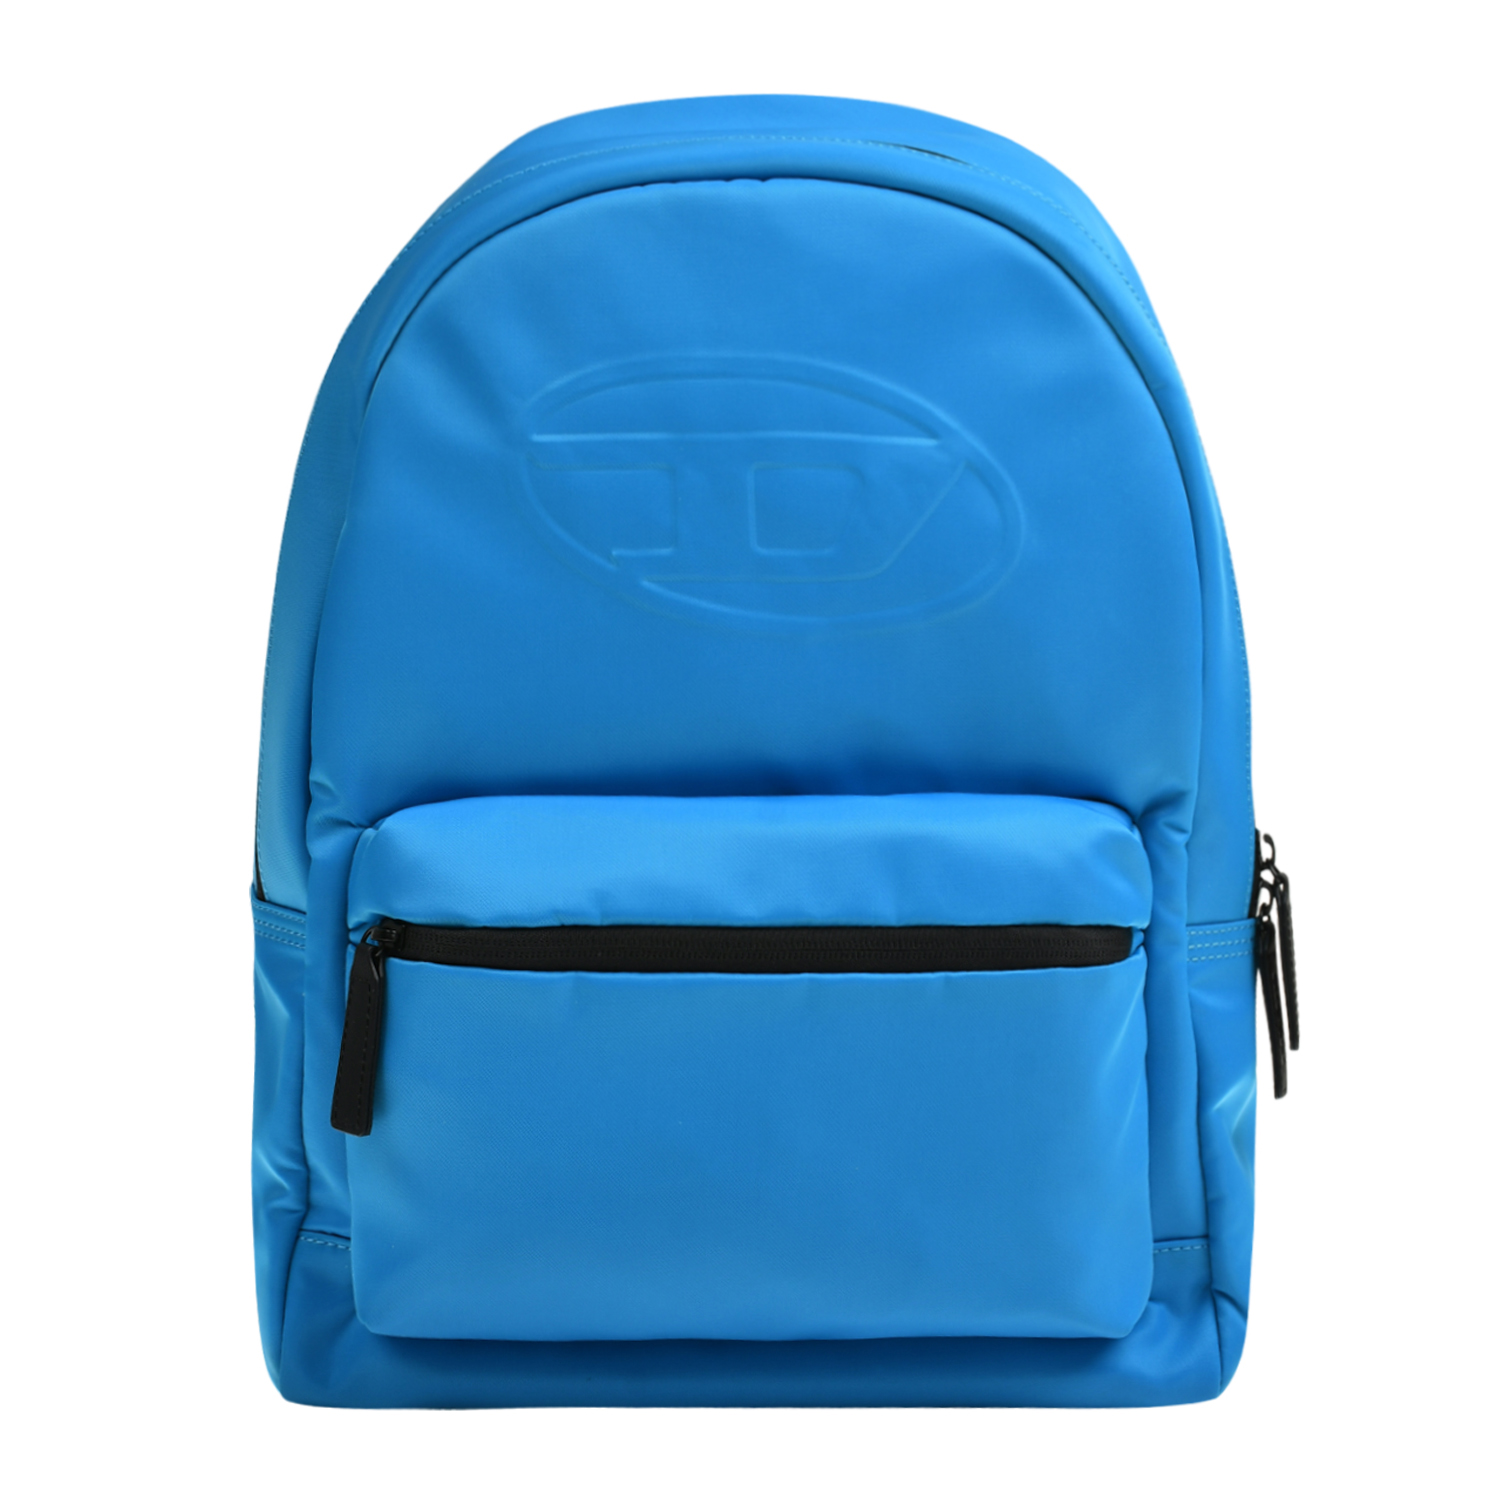 Рюкзак с лого в тон, синий Diesel, размер unica - фото 1